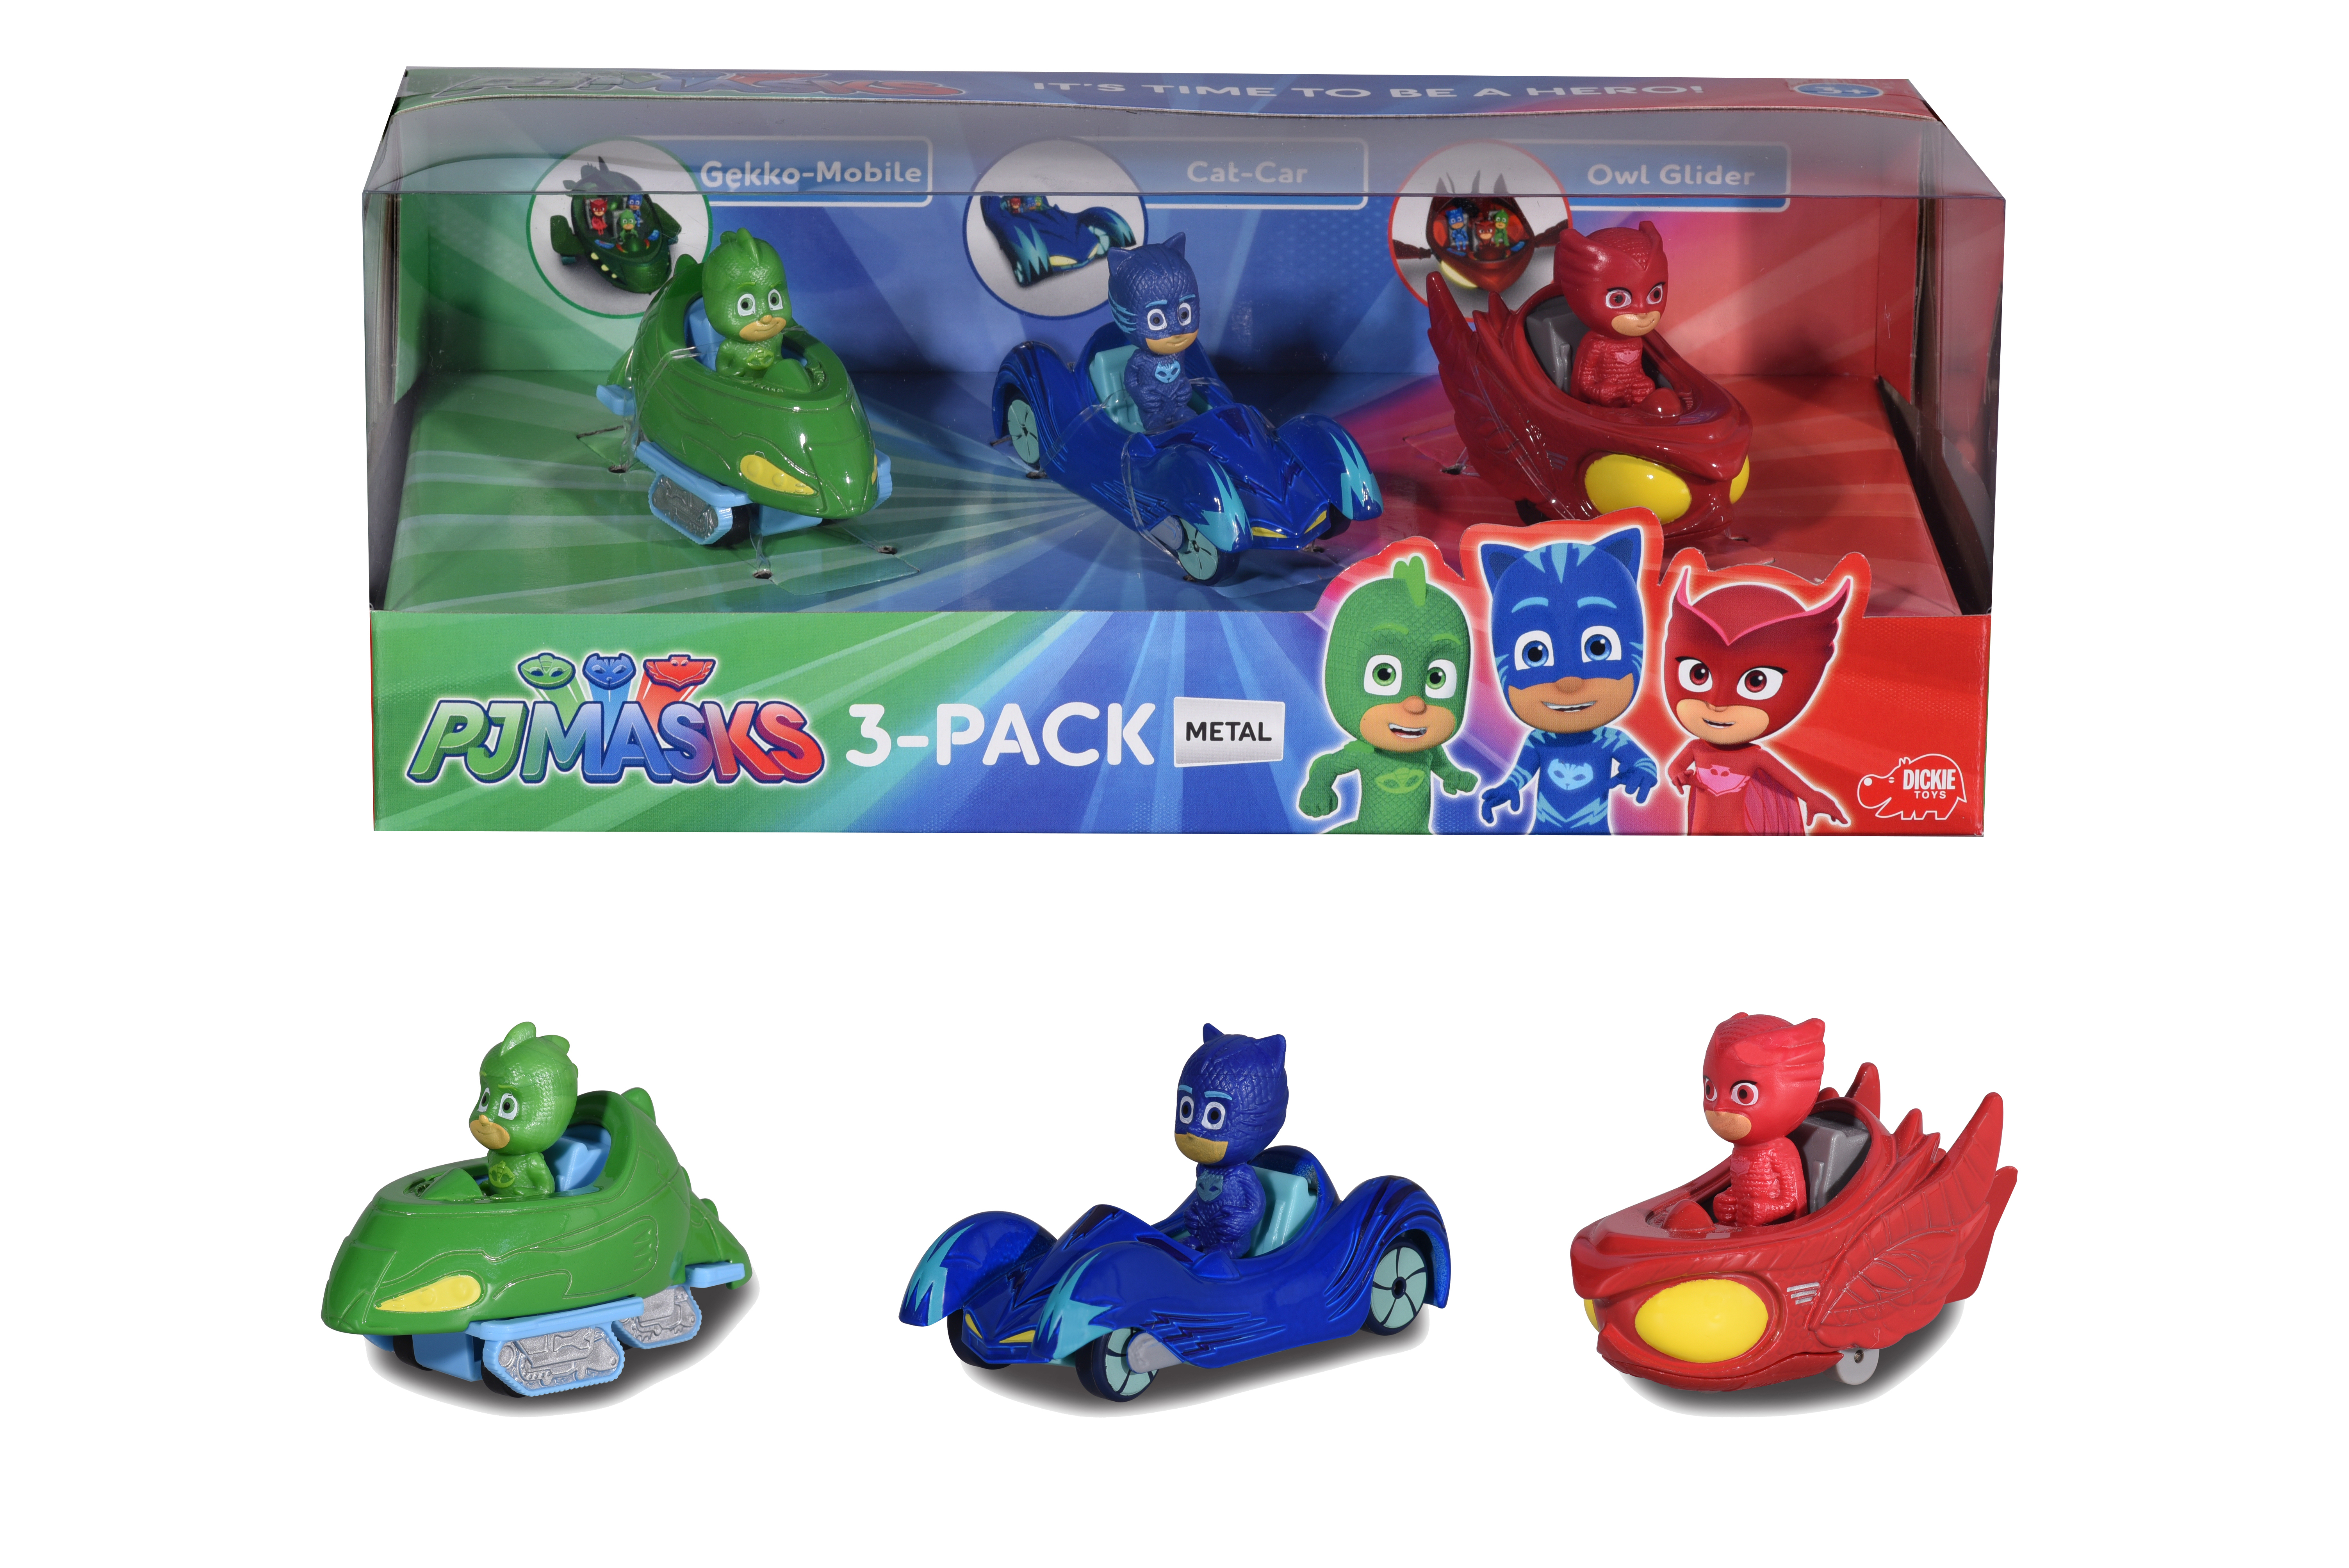 JADA PJ Masks Mehrfarbig Spielzeugauto 3-Pack